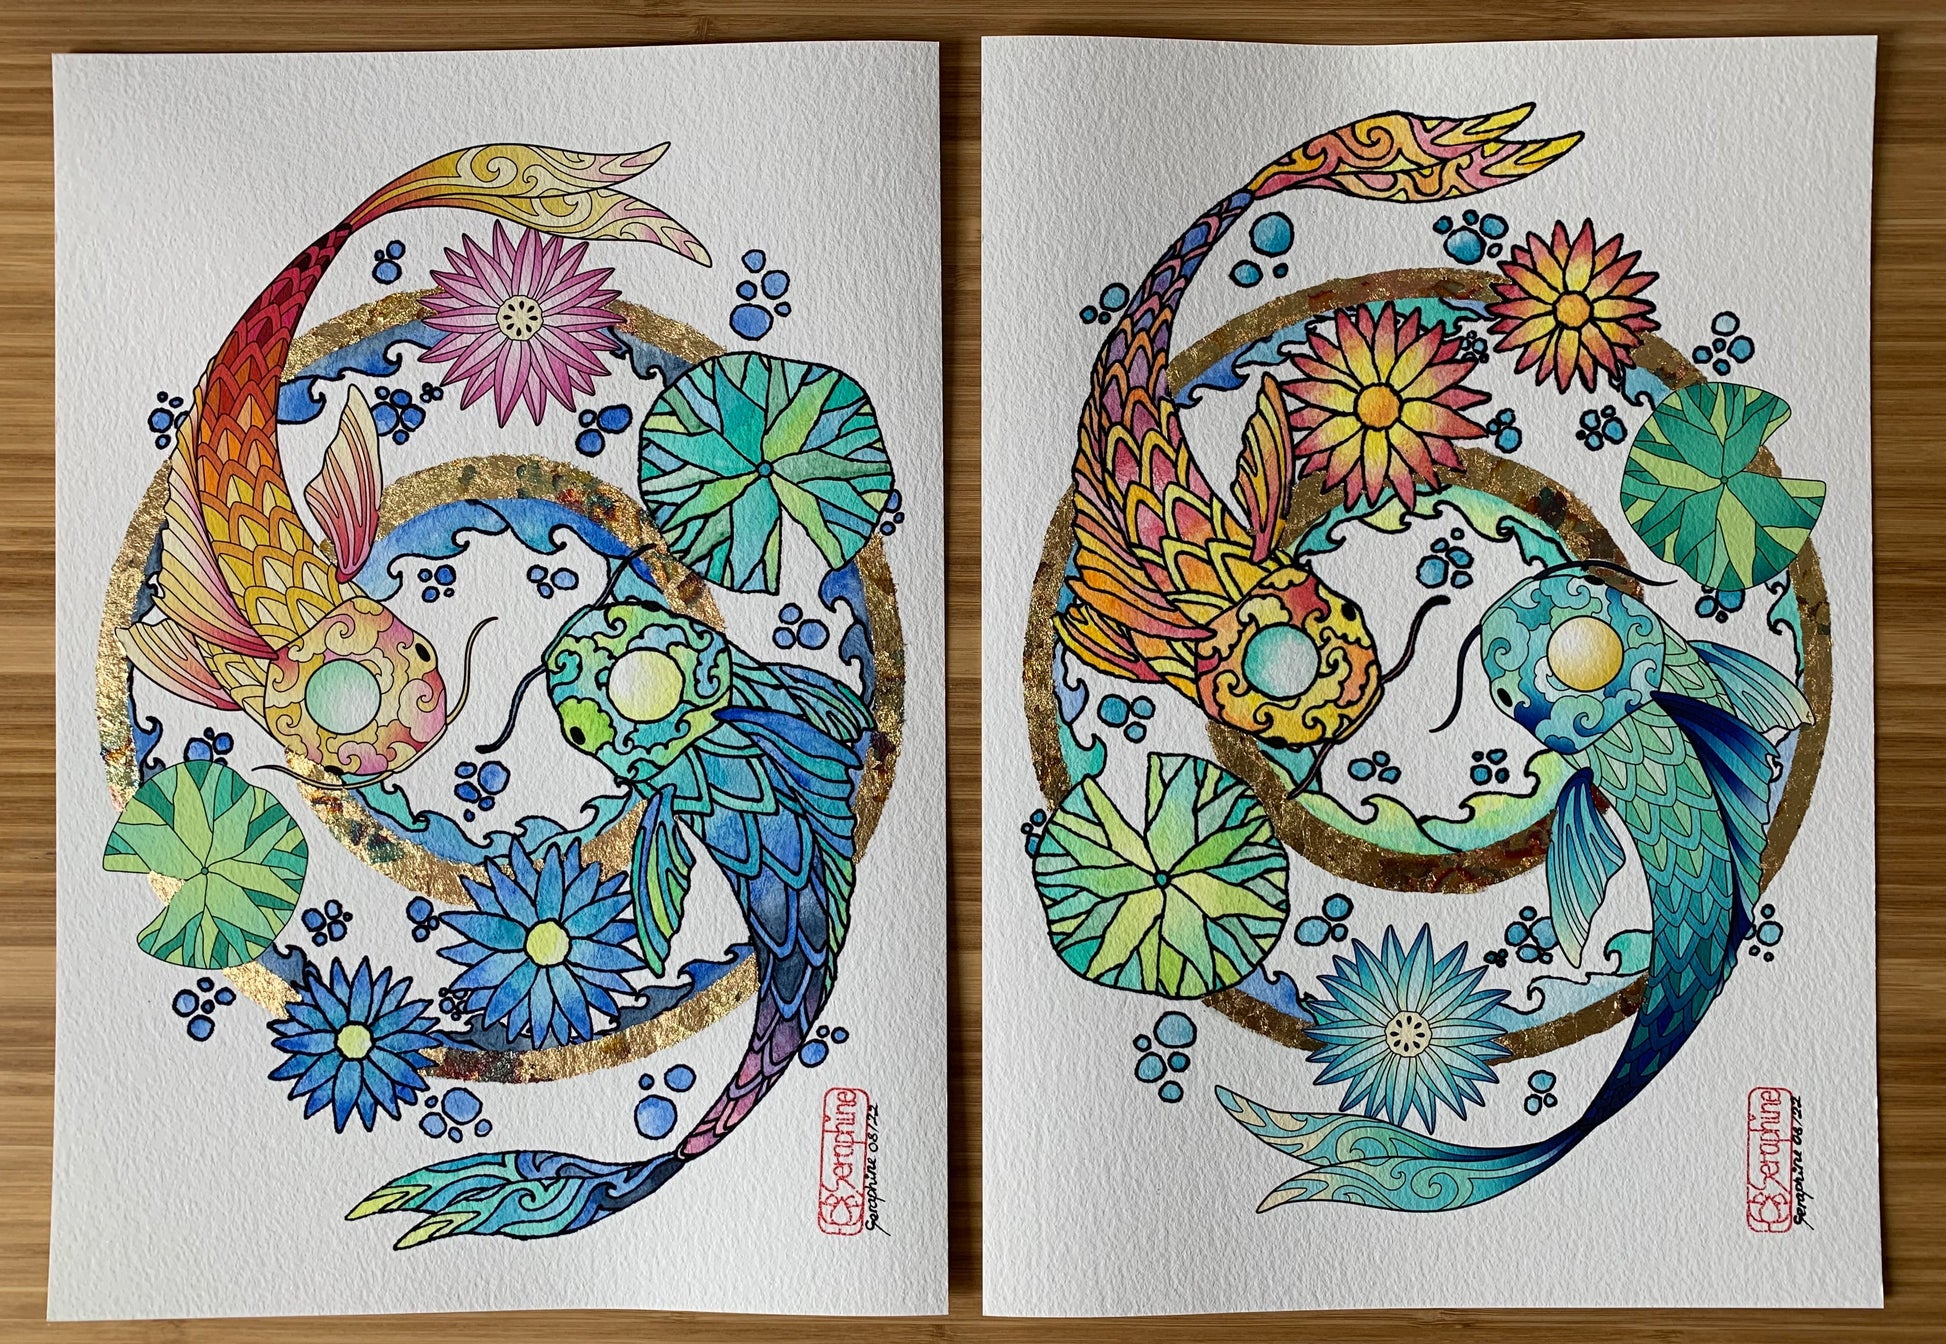 Ein Set aus zwei Illustrationen nebeneinander, die jeweils zwei sich umschwimmende Kois zeigen